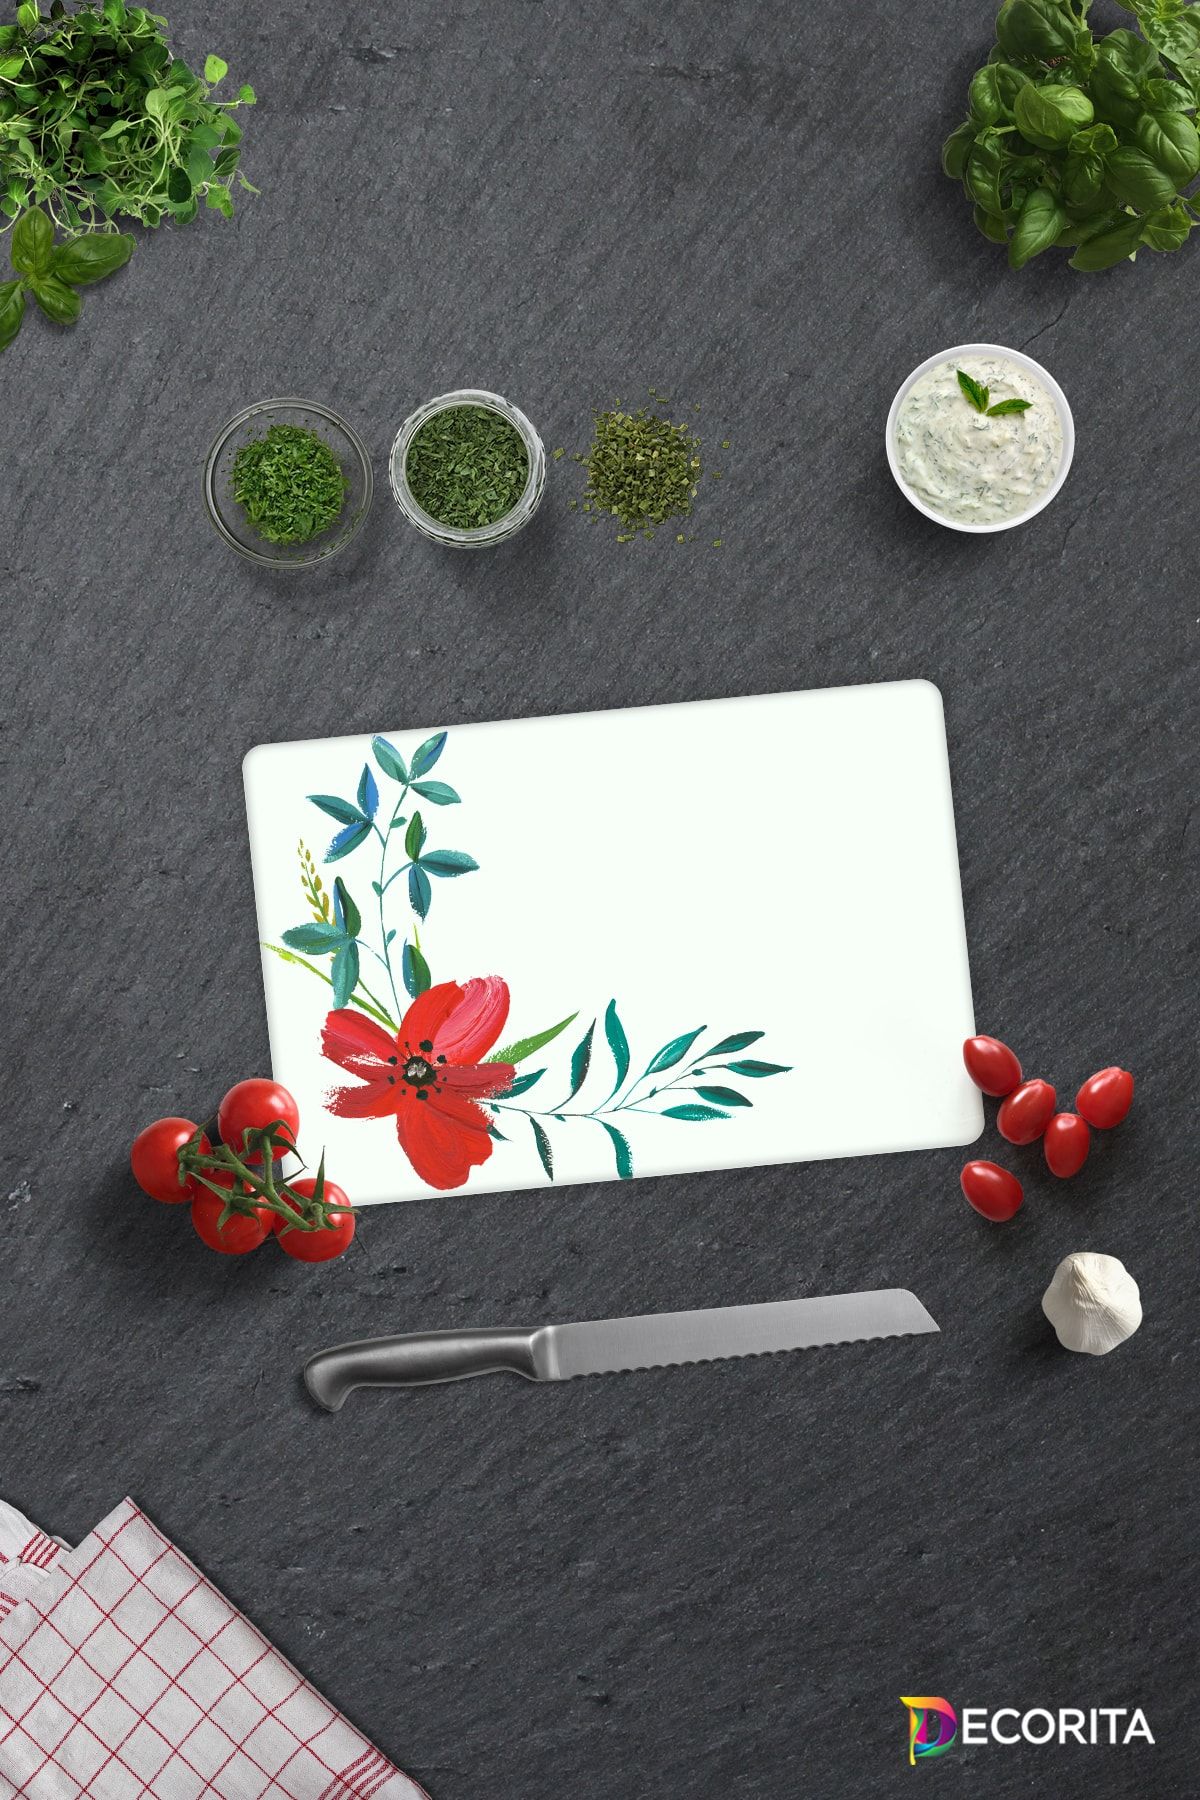 Decorita Çiçek Motifi Desenli | Cam Kesme Tahtası - Cam Kesme Tablası | 20cm x 30cm